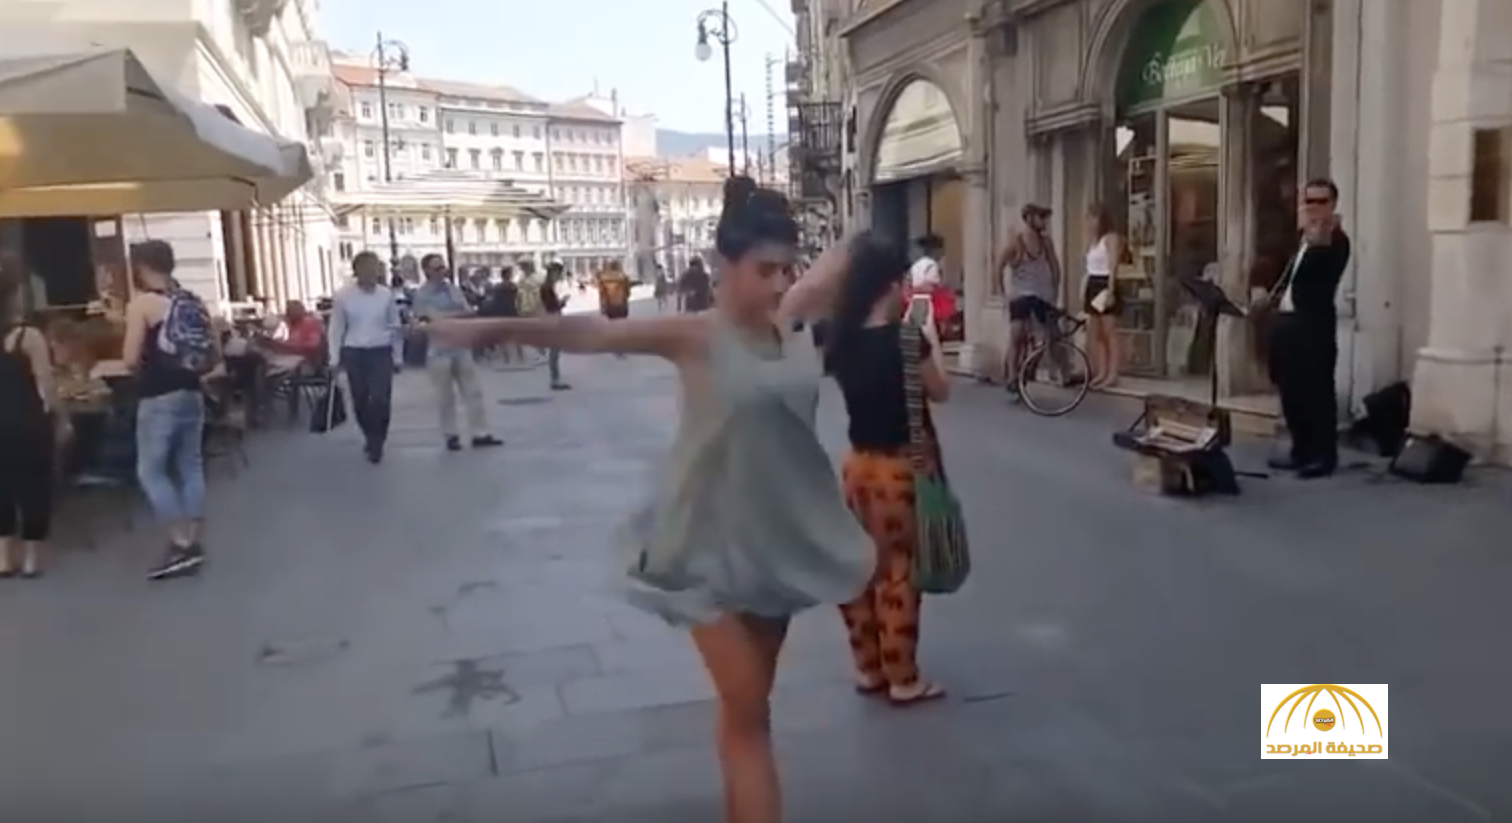 بالفيديو: فلسطيني يشجع ابنته على الرقص بين المارة في إيطاليا